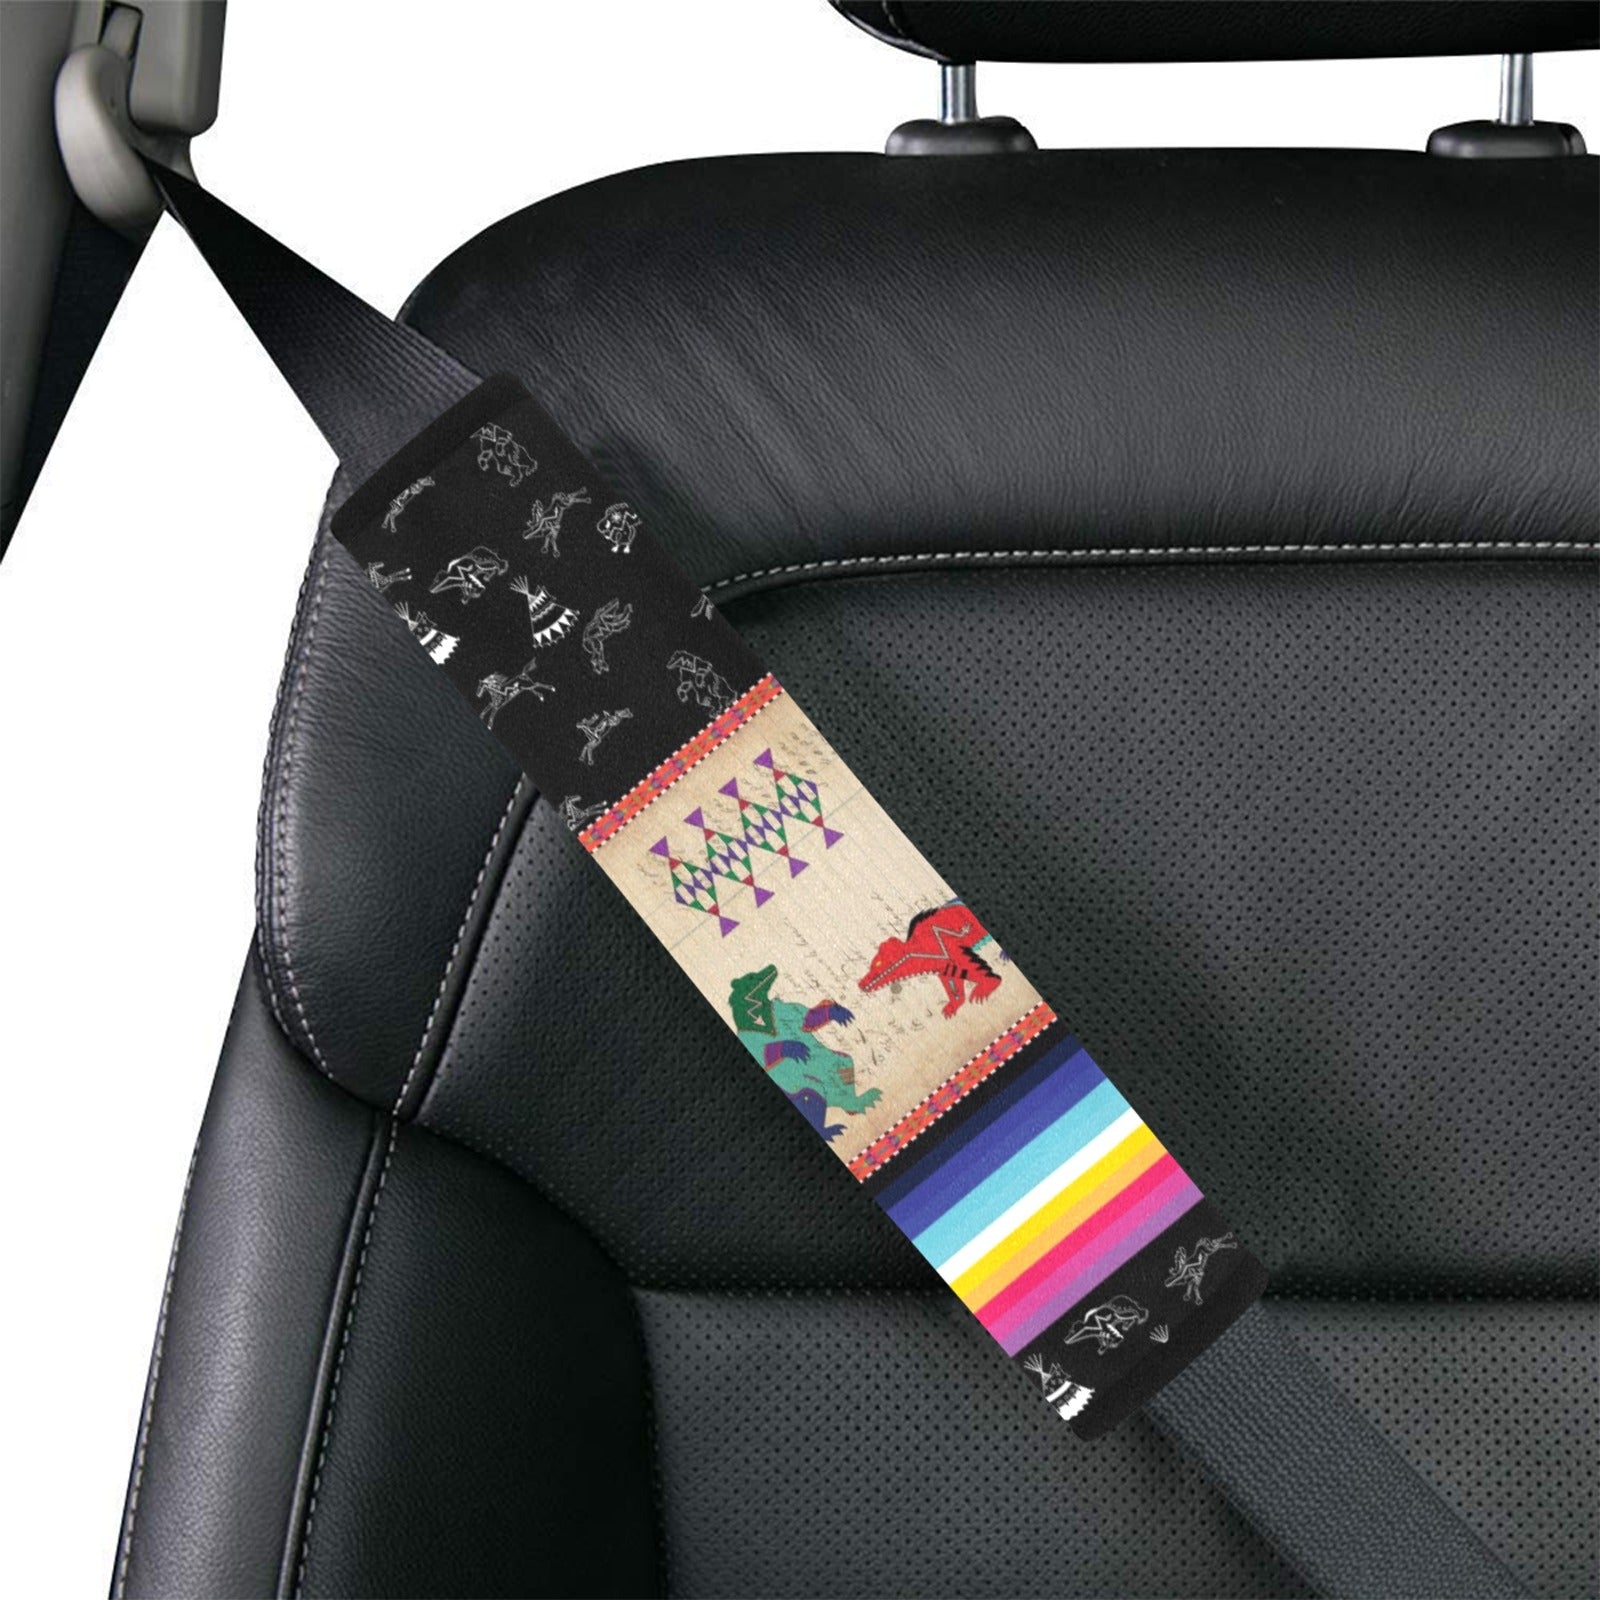 Bear Ledger Black Sky Car Seat Belt Cover 7''x12.6'' (Pack of 2)